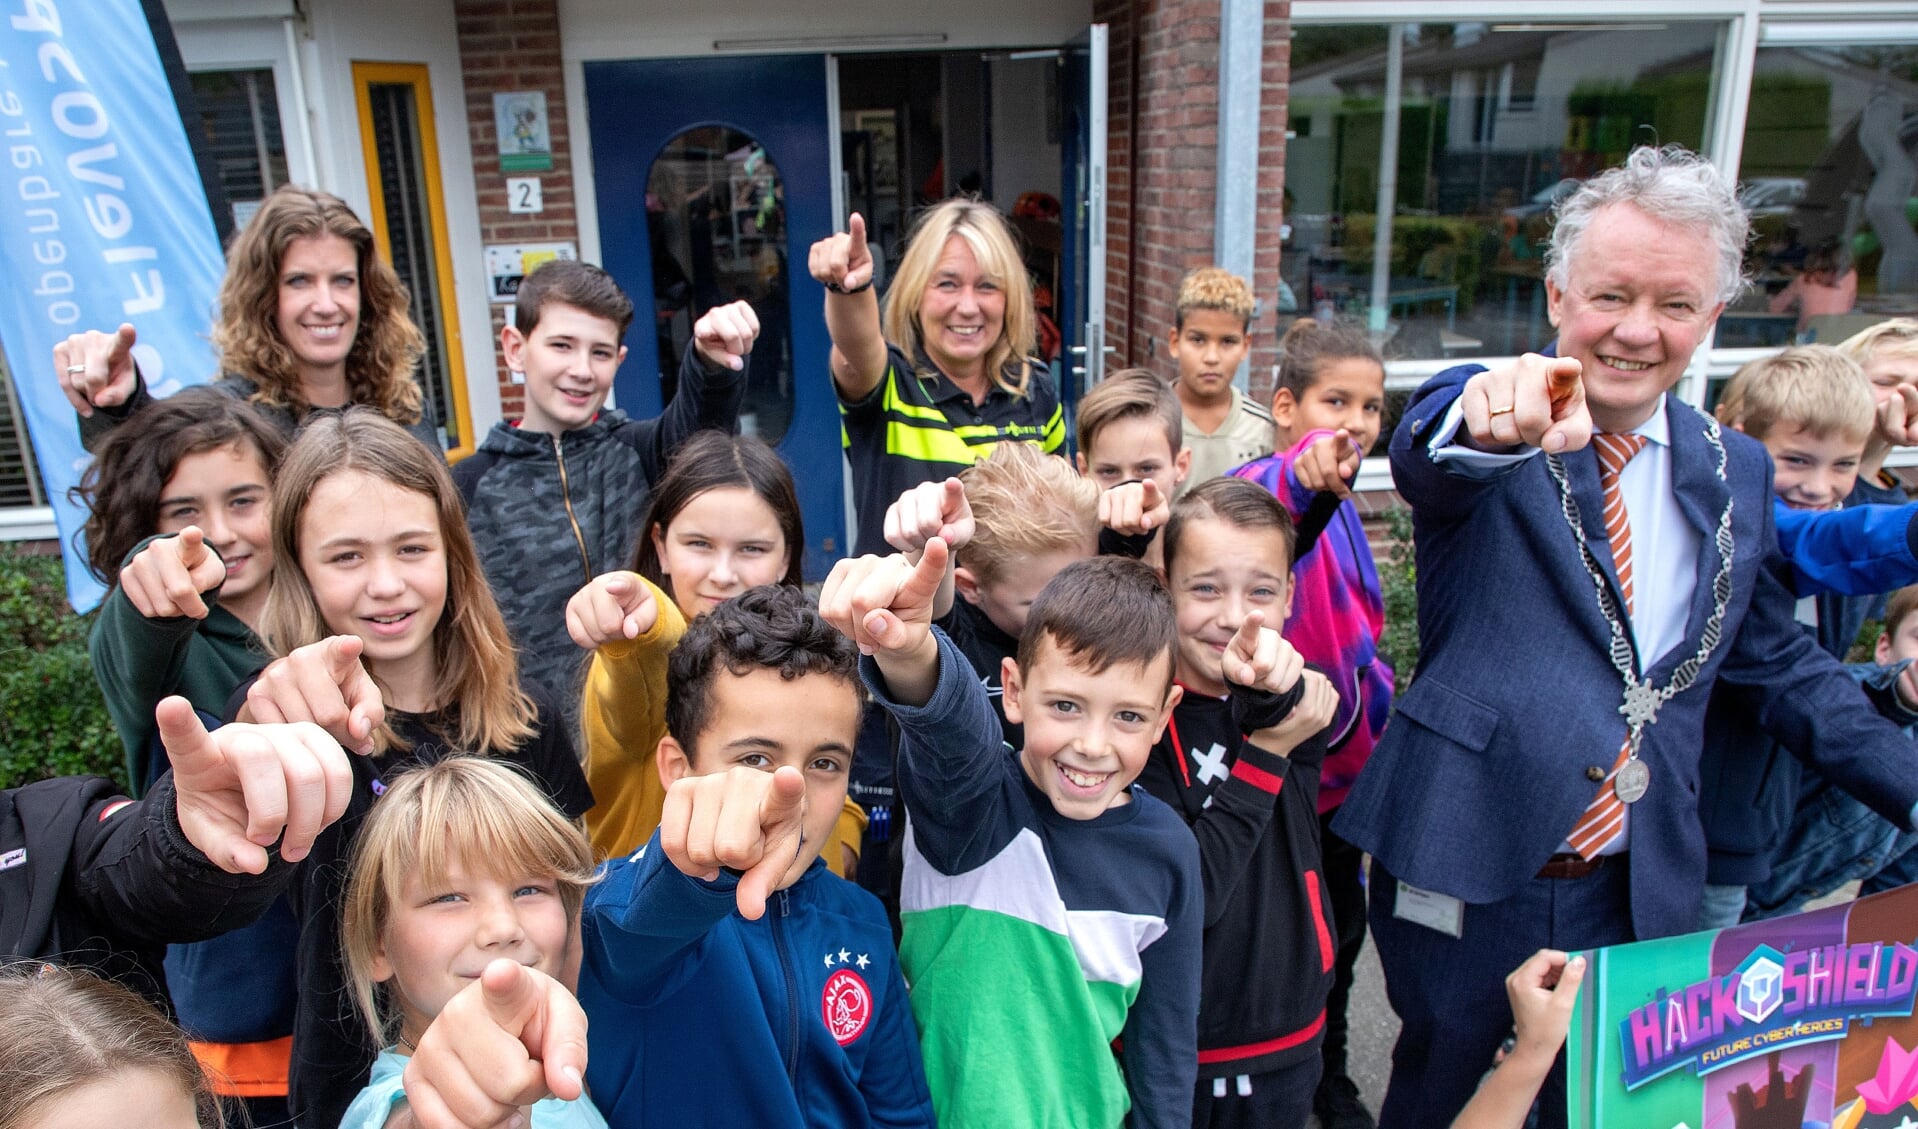 Burgemeester Jean Paul Gebben deed vanmorgen aan promotie bij openbare basisschool De Flevosprong.